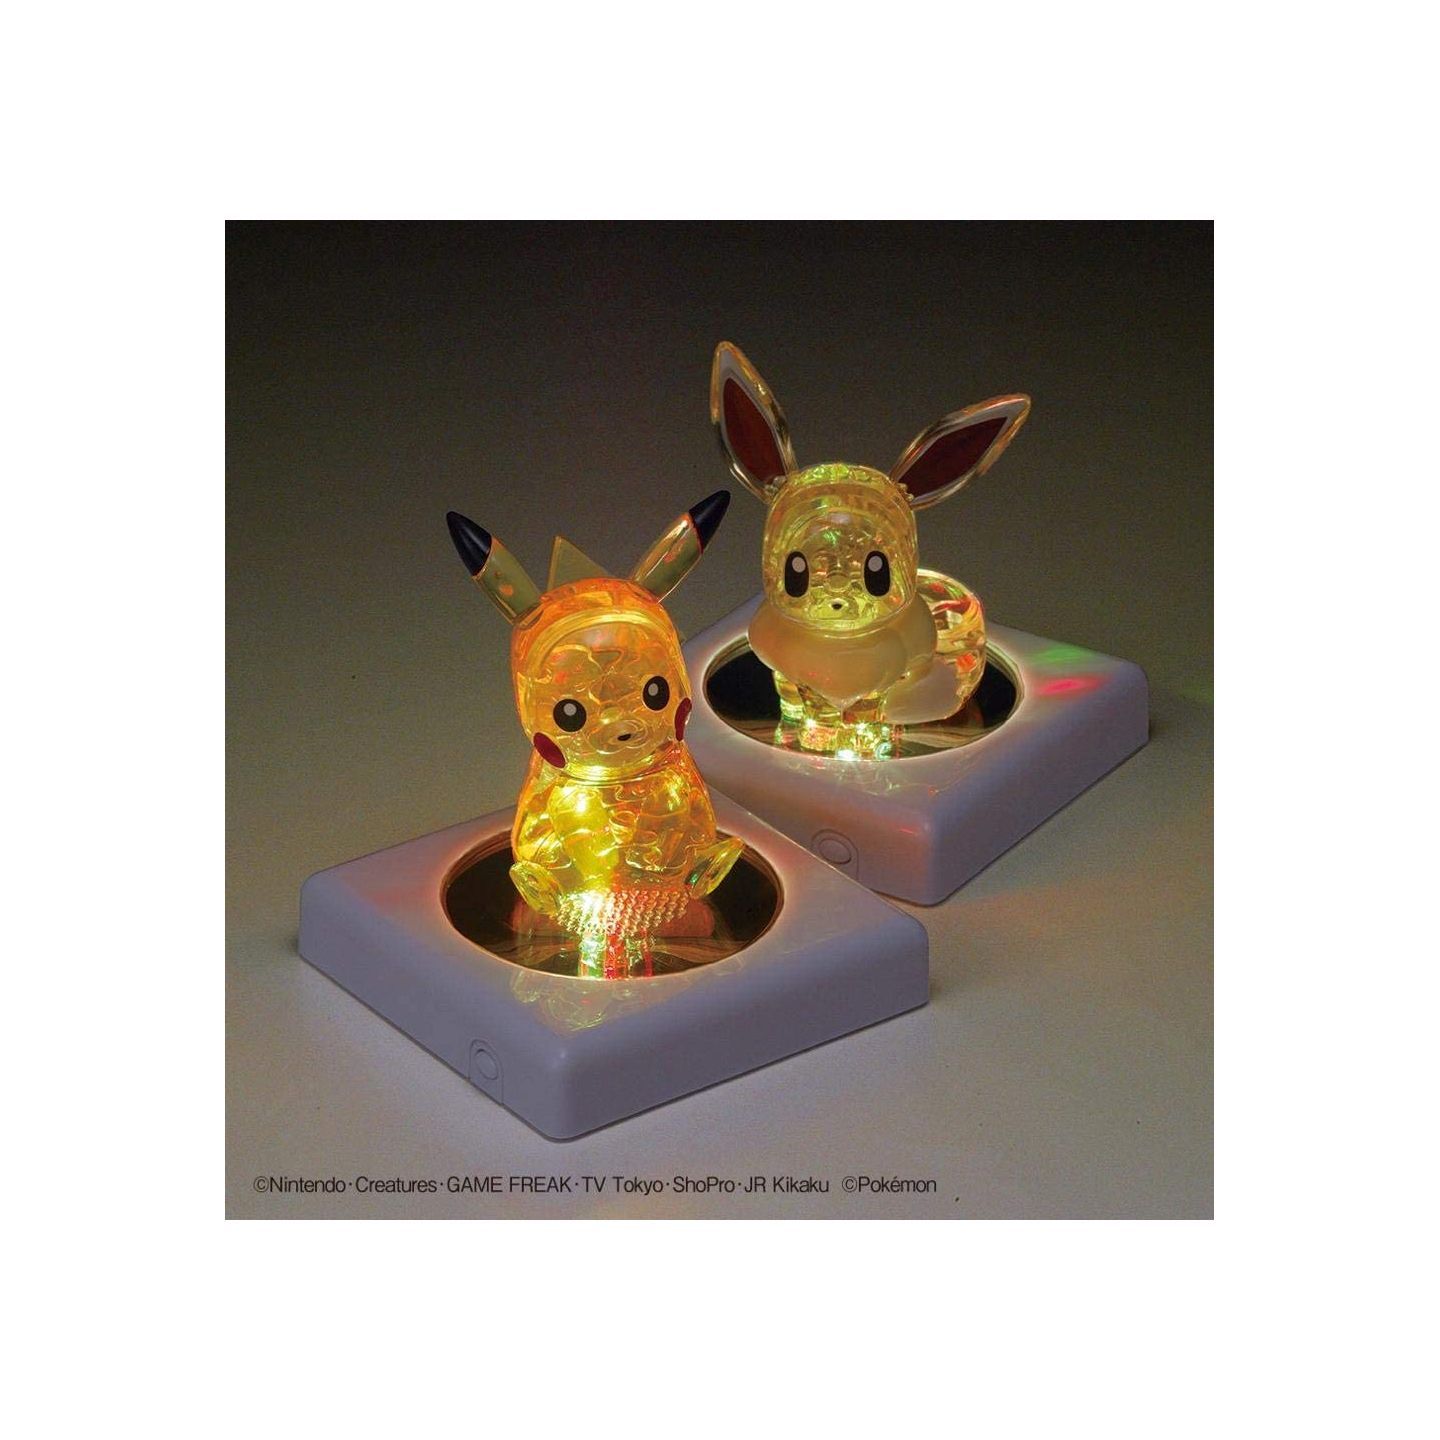 Pokemon Jigsaw Puzzle Pikachu And Bunny 150 Piece